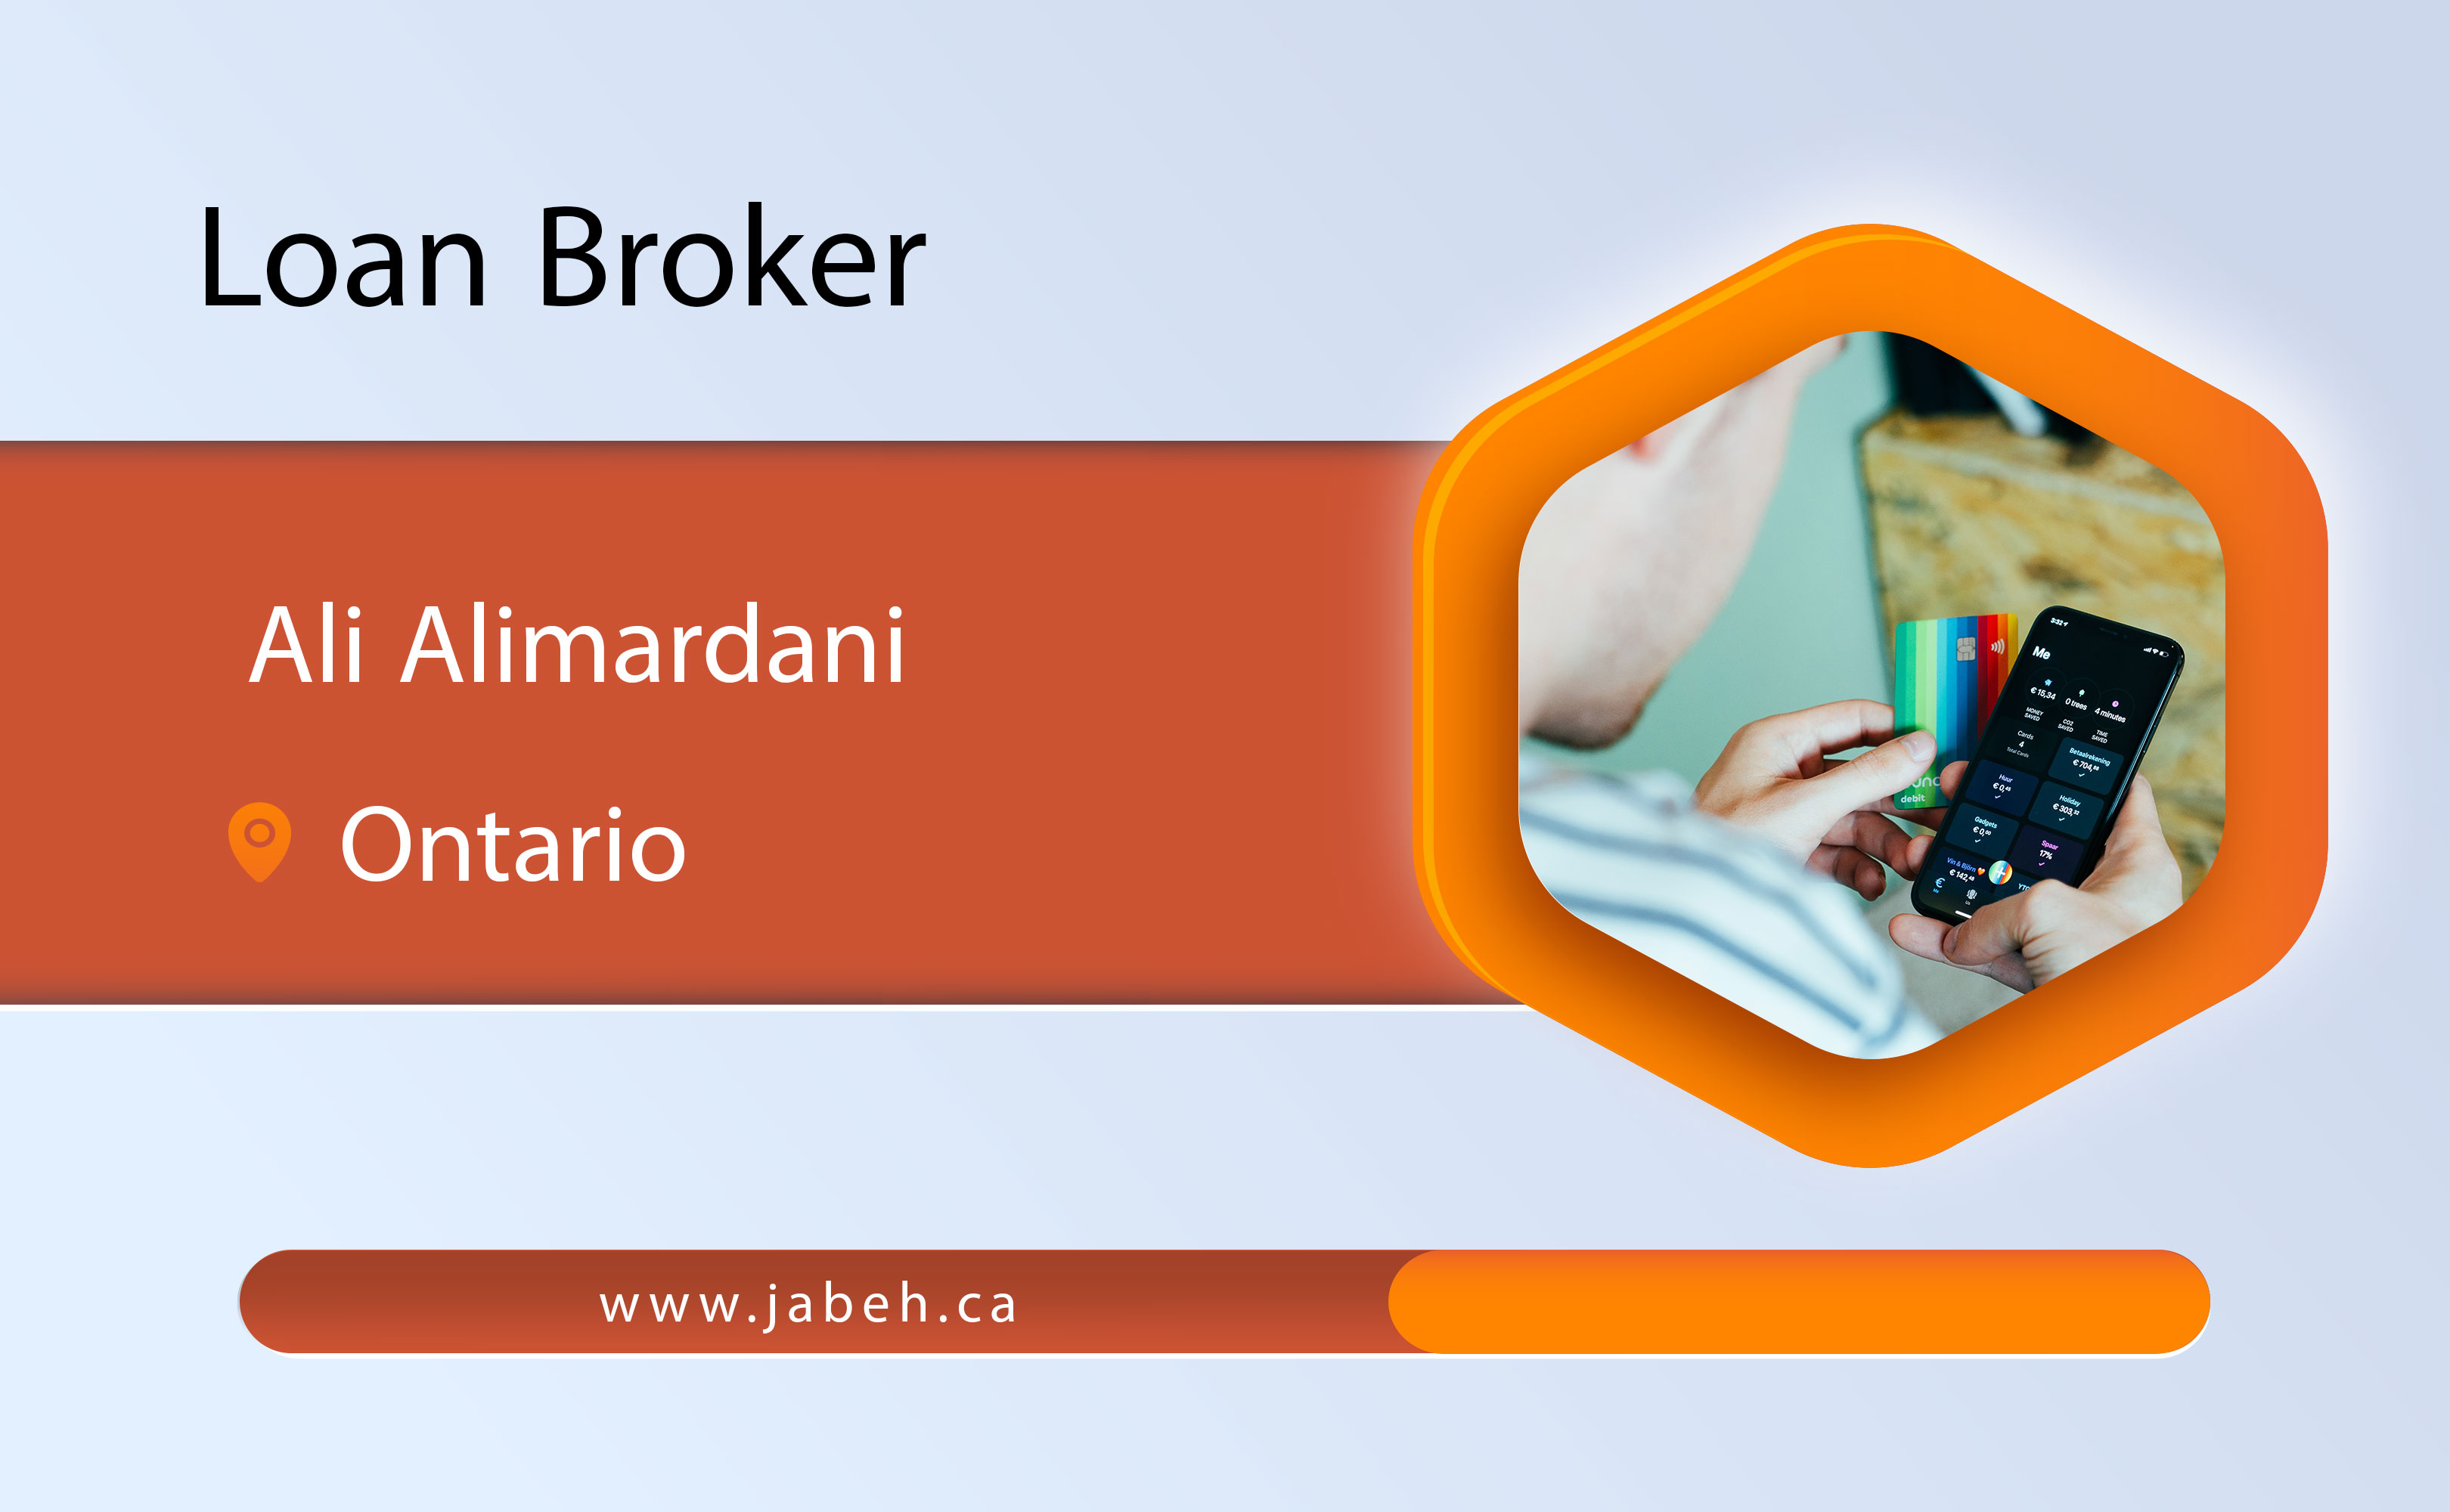 Ali Alimardani loan broker in Ontario